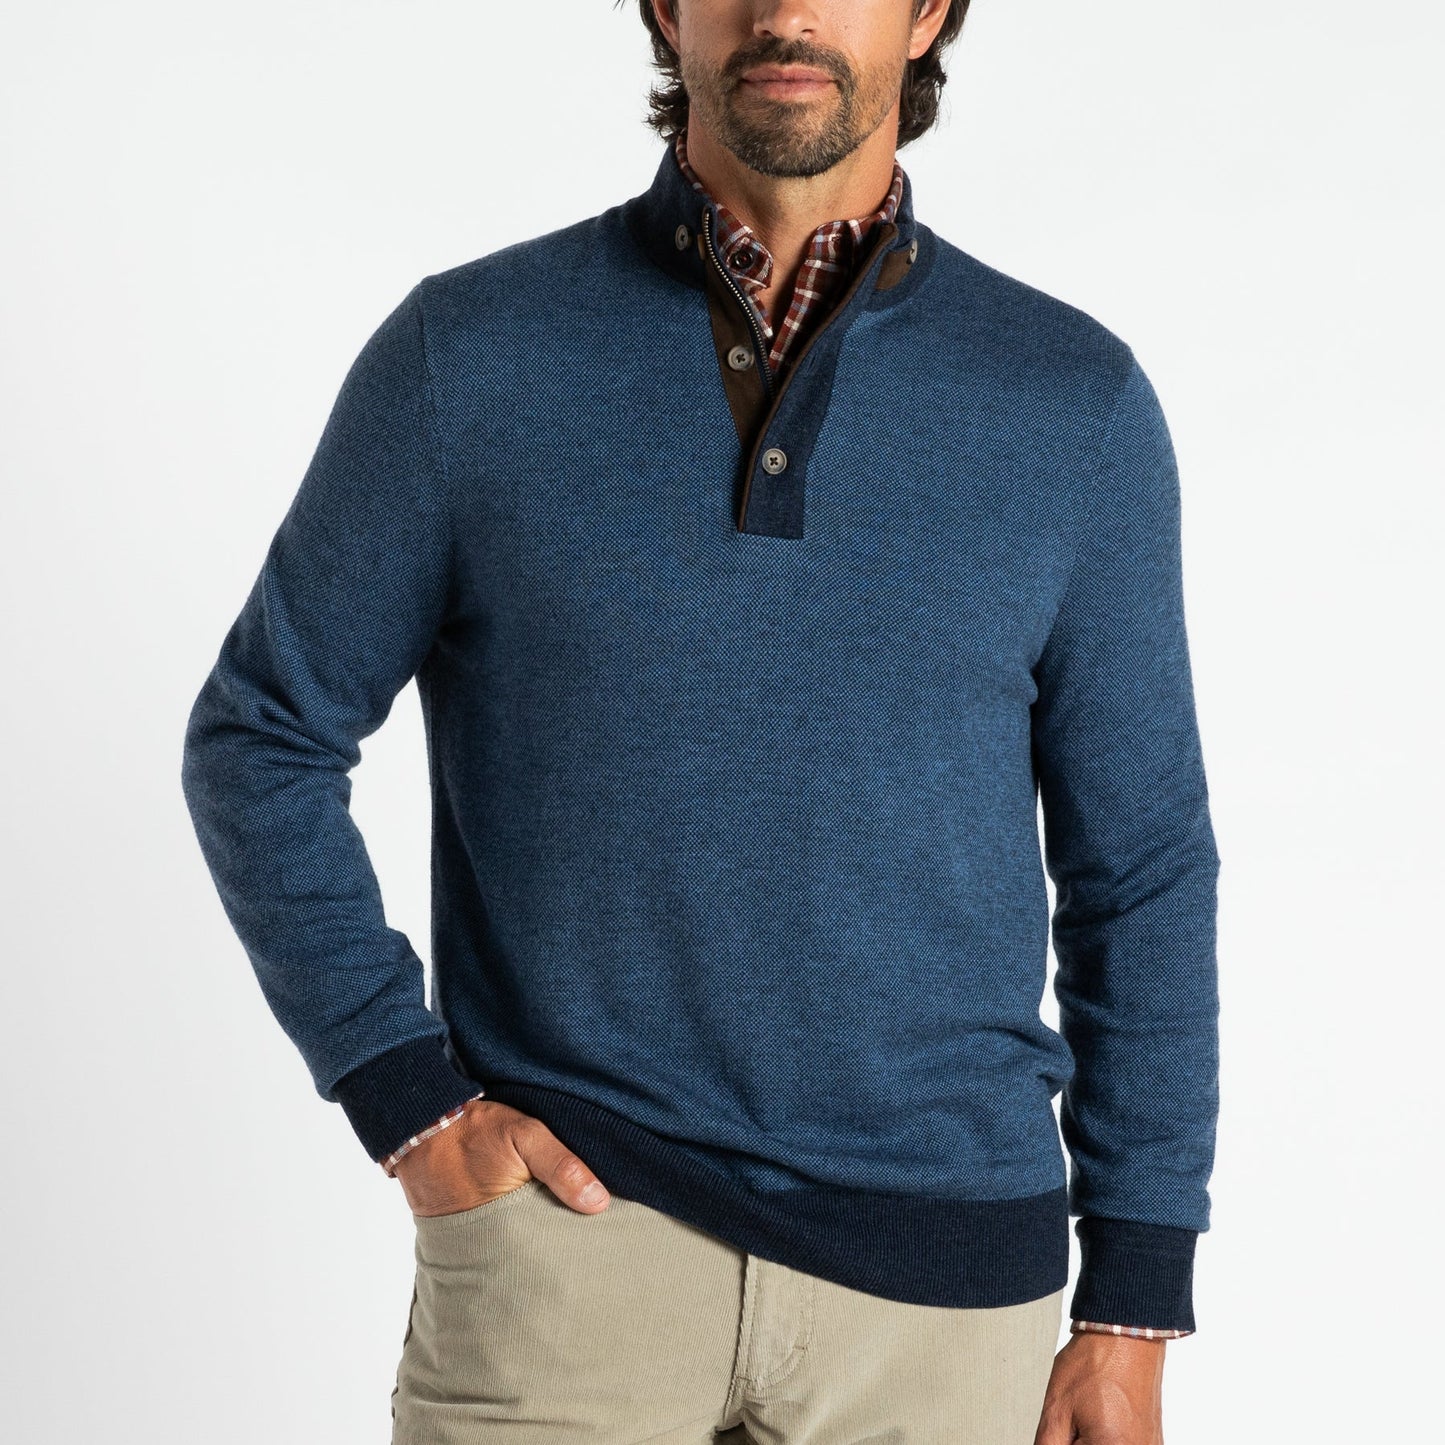 Duckhead Canter Merino Pullover Sweater